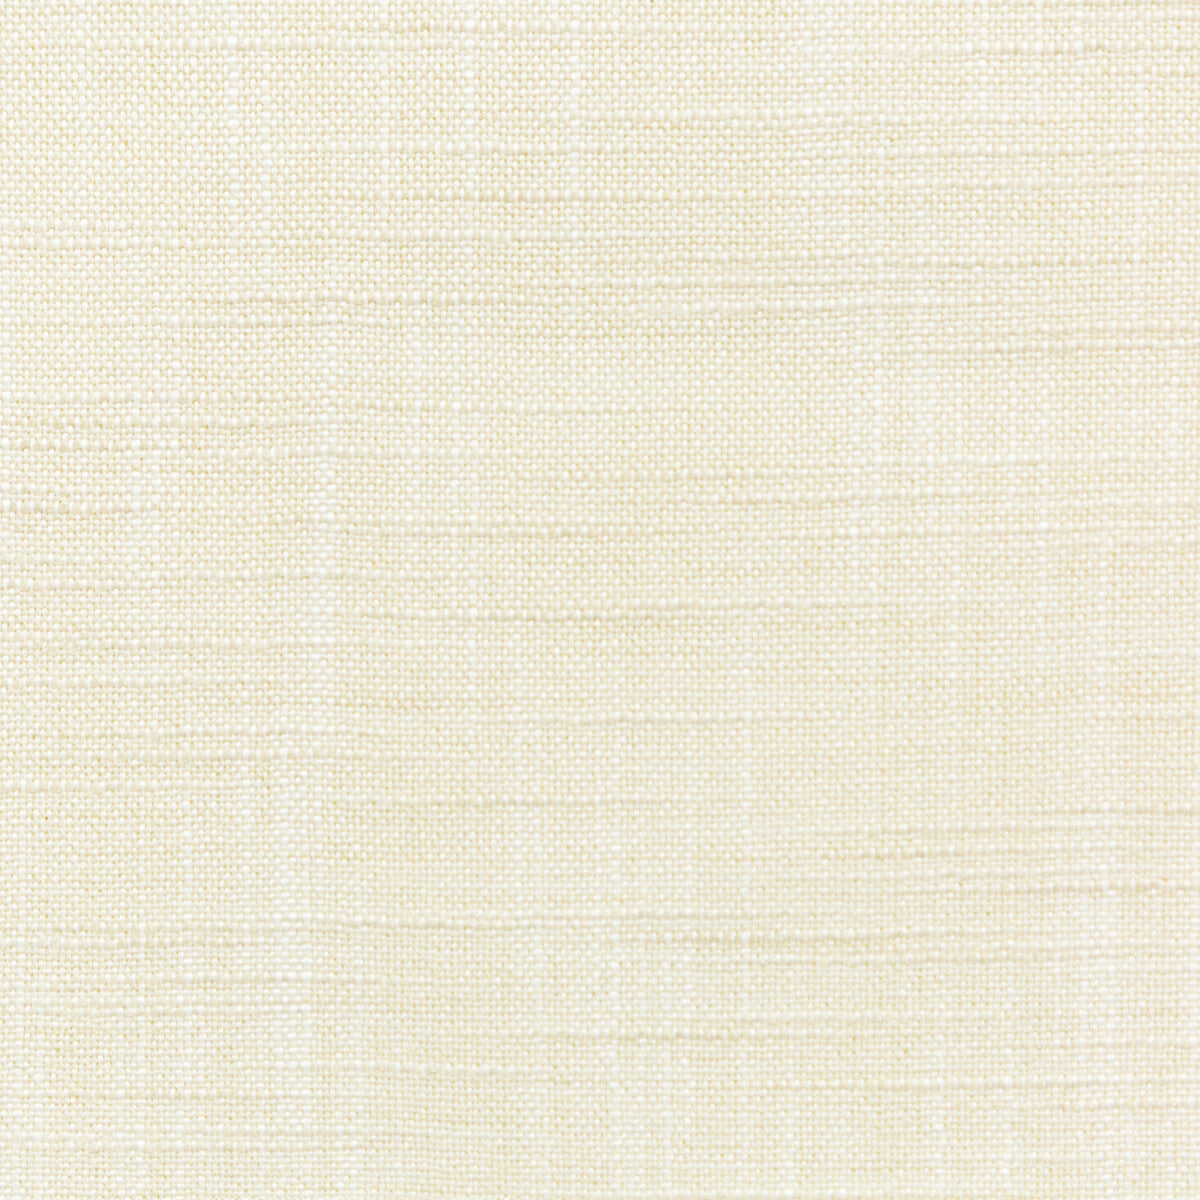 Kravet Basics fabric in 4668-1 color - pattern 4668.1.0 - by Kravet Basics